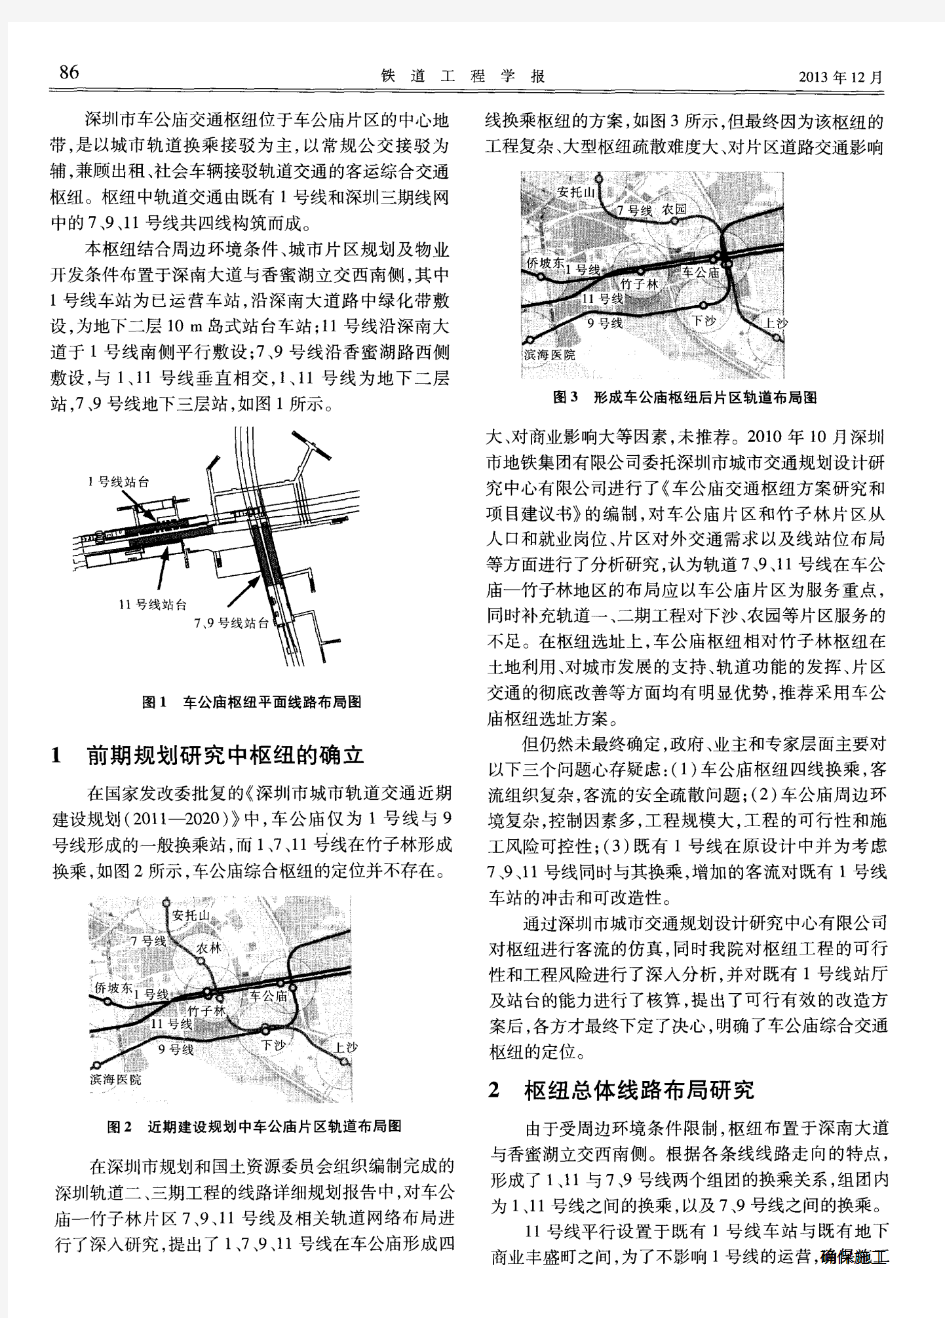 深圳市车公庙综合交通枢纽线路布局方案研究